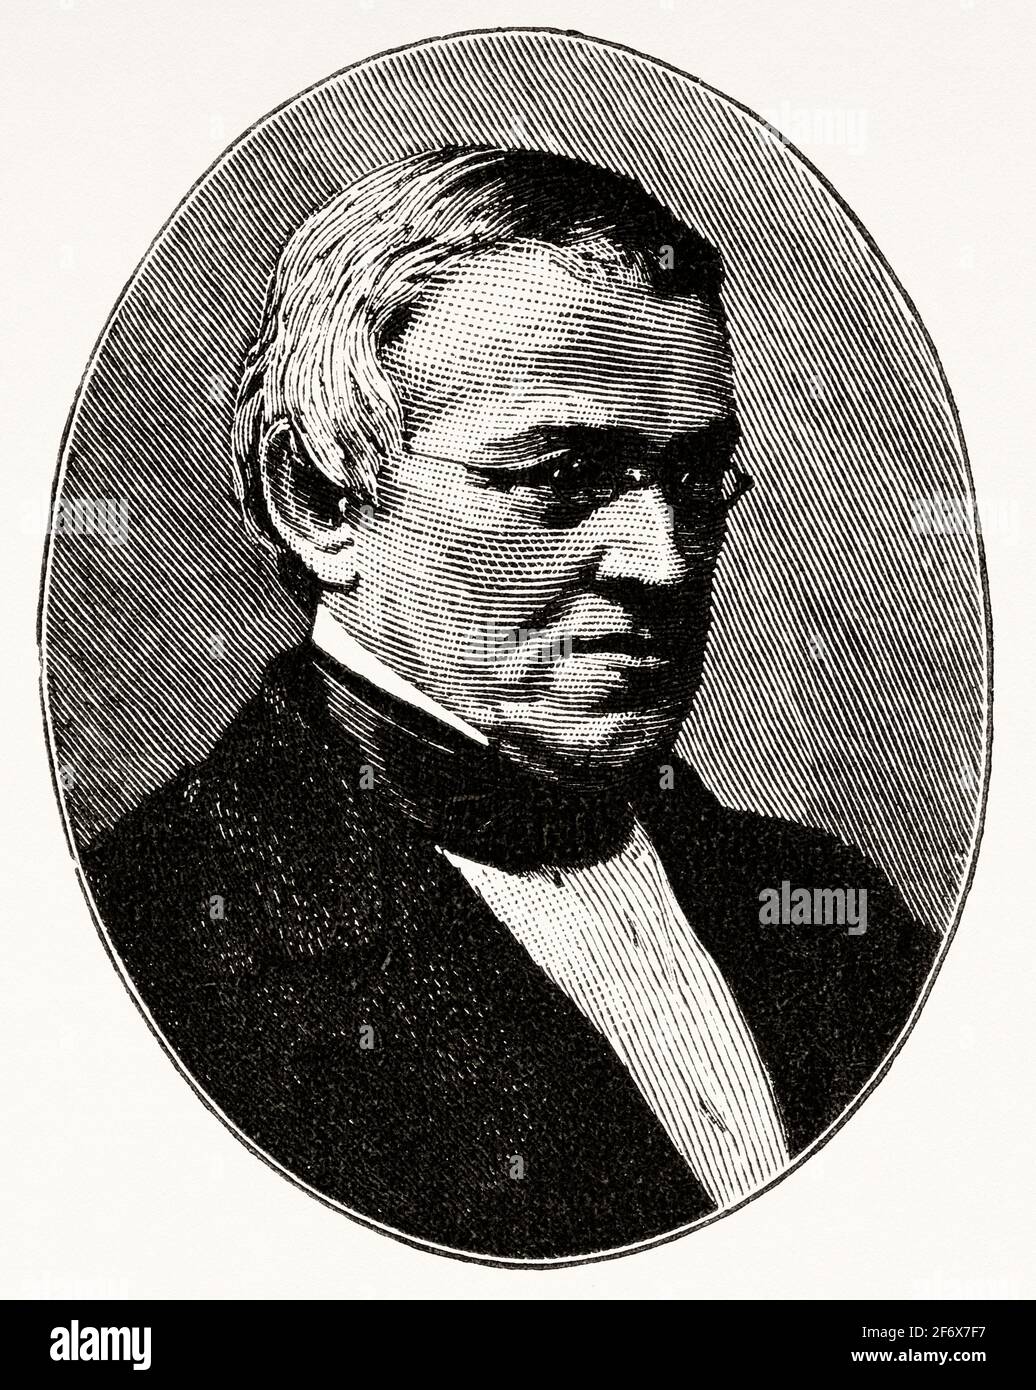 Portrait de Sir Charles Wheatstone (1802-1875) scientifique et inventeur anglais de nombreuses percées scientifiques de l'ère victorienne, y compris la concertina anglaise, le stéréoscope et le chiffrement Playfair. Mieux connu pour ses contributions dans le développement du pont de Wheatstone. Royaume-Uni, Angleterre. Europe Banque D'Images